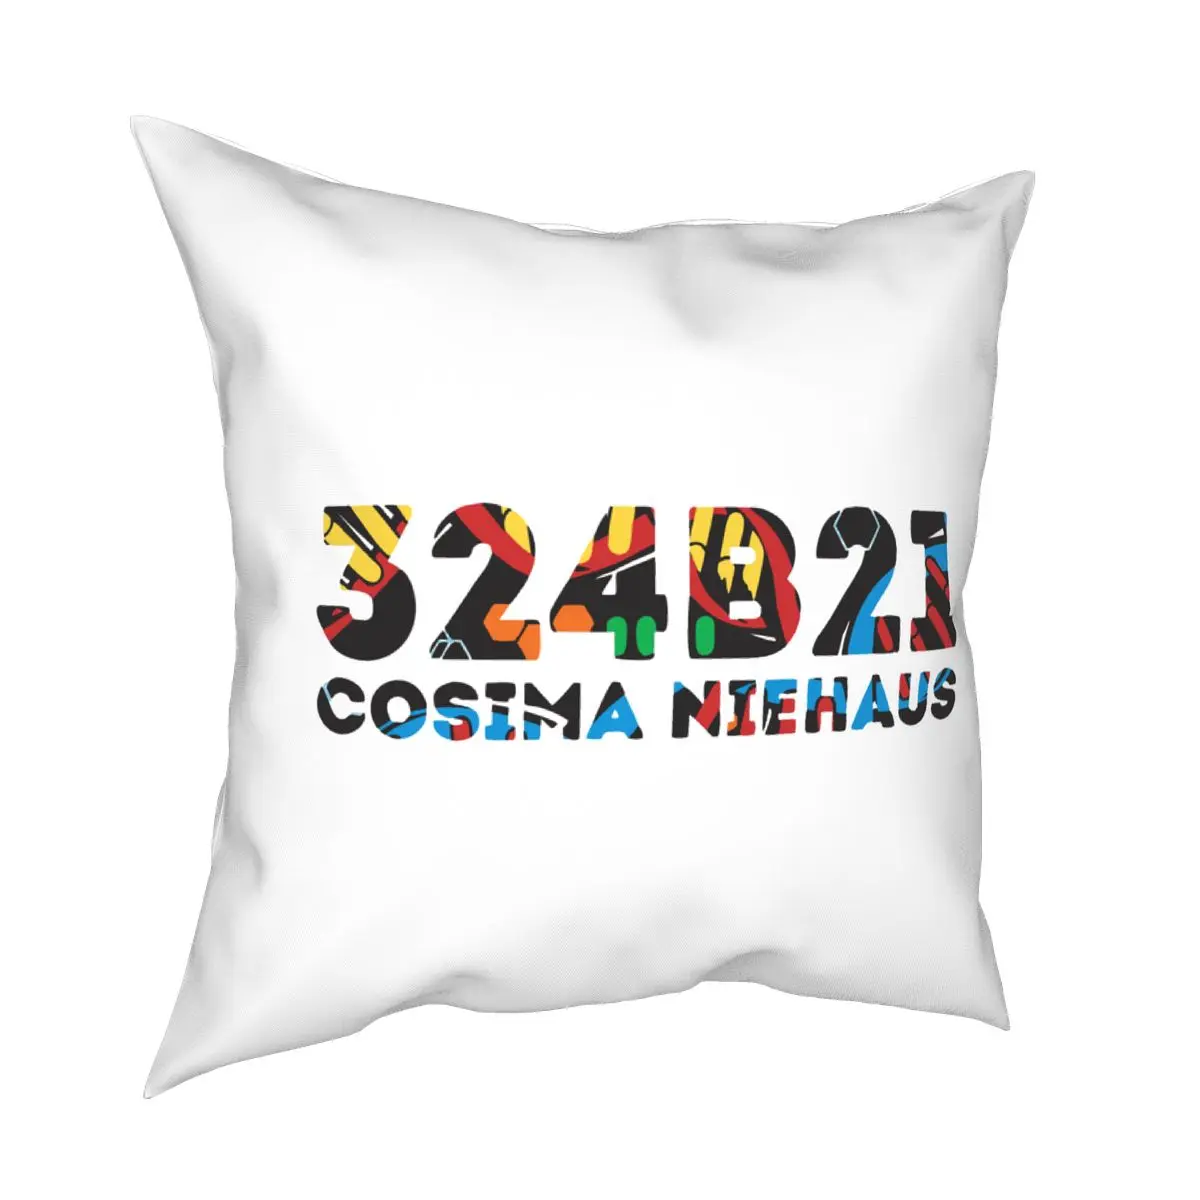 

Cosima Niehaus 34B21 Throw Pillow Cover Throw Pillow Orphan Black Clone Club Funny Cushion Covers